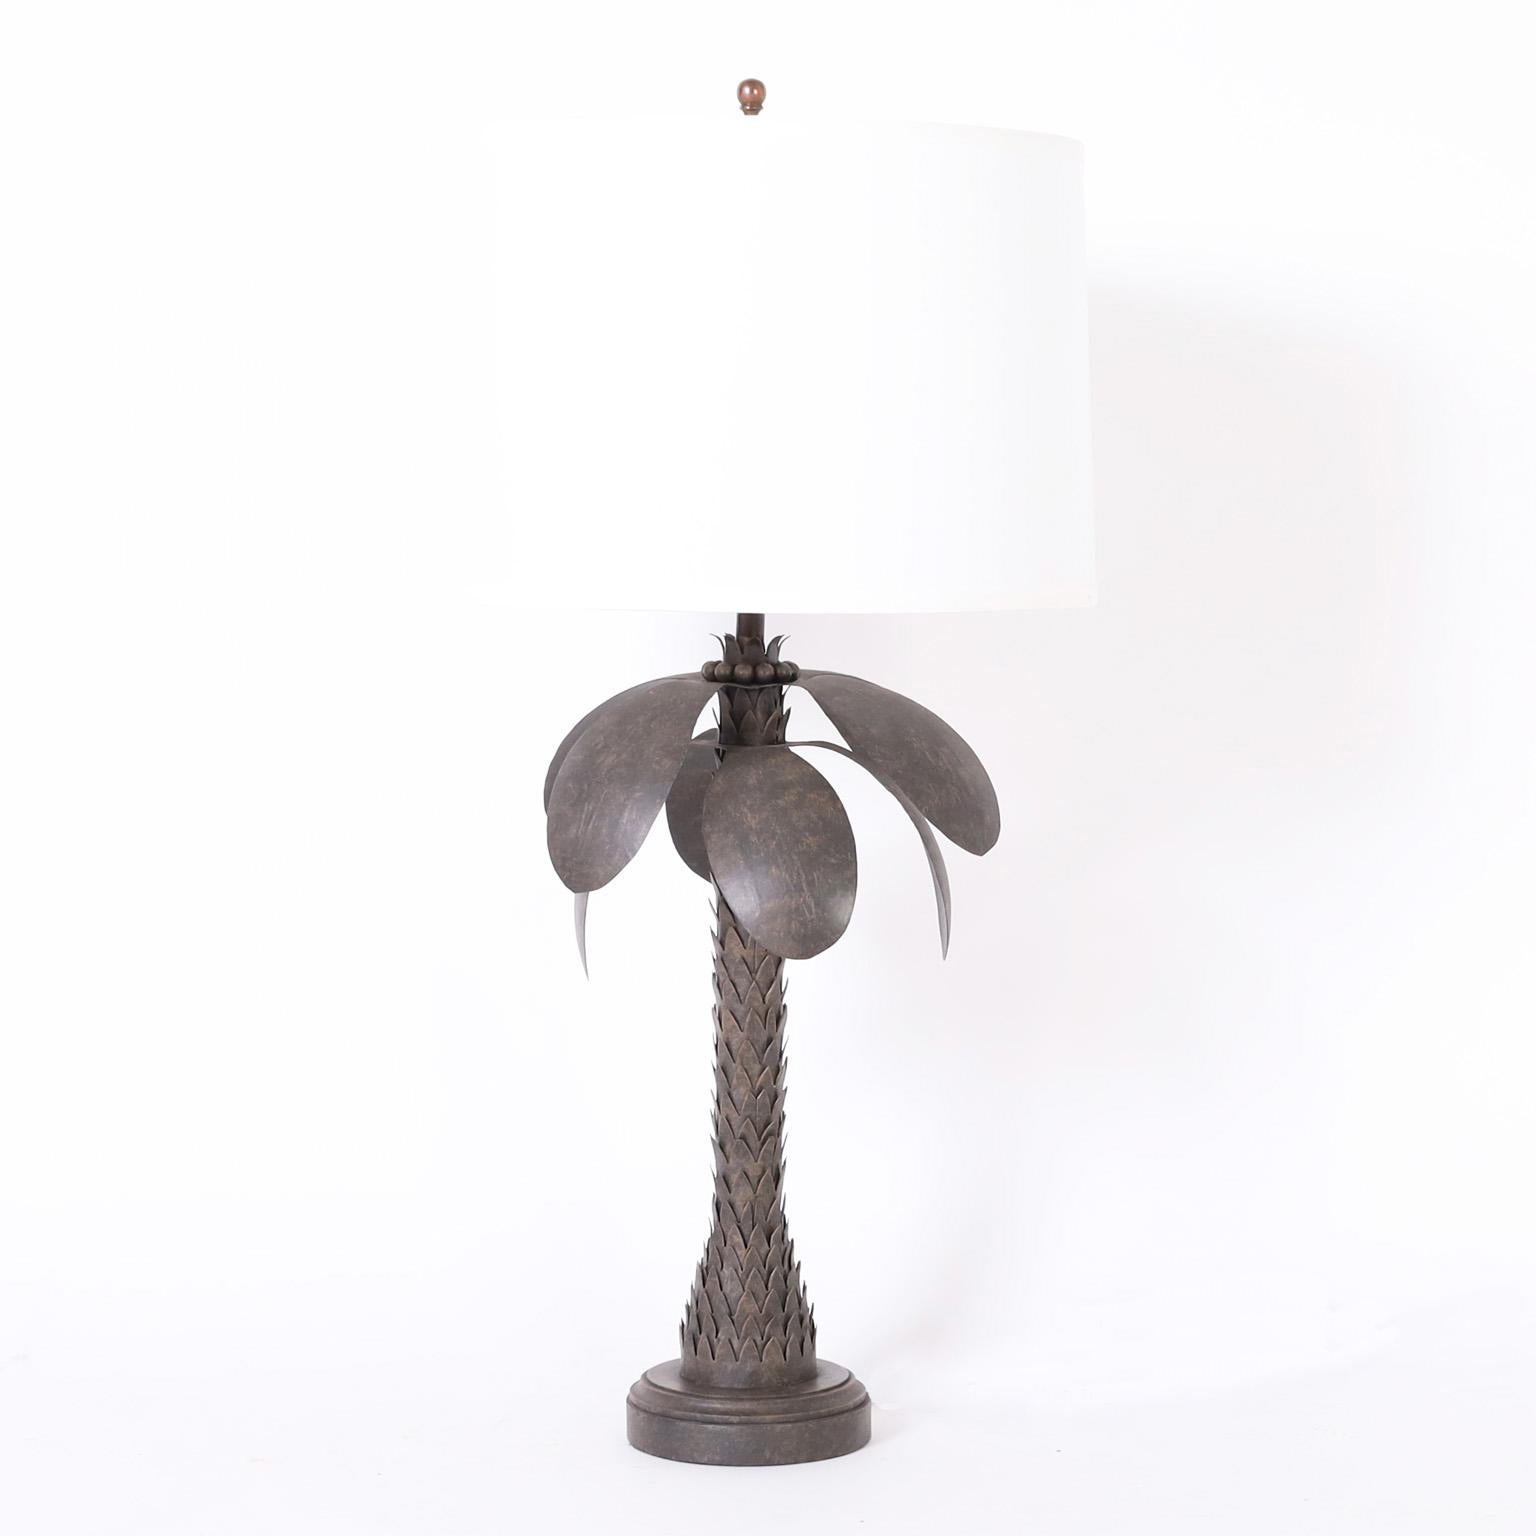 Paire de lampes de table vintage en forme de palmier, fabriquées en métal avec une finition chic en métal brut, ayant un ensemble inhabituel d'influences incluant la stylisation, l'industriel, le brutaliste et le tropical. 